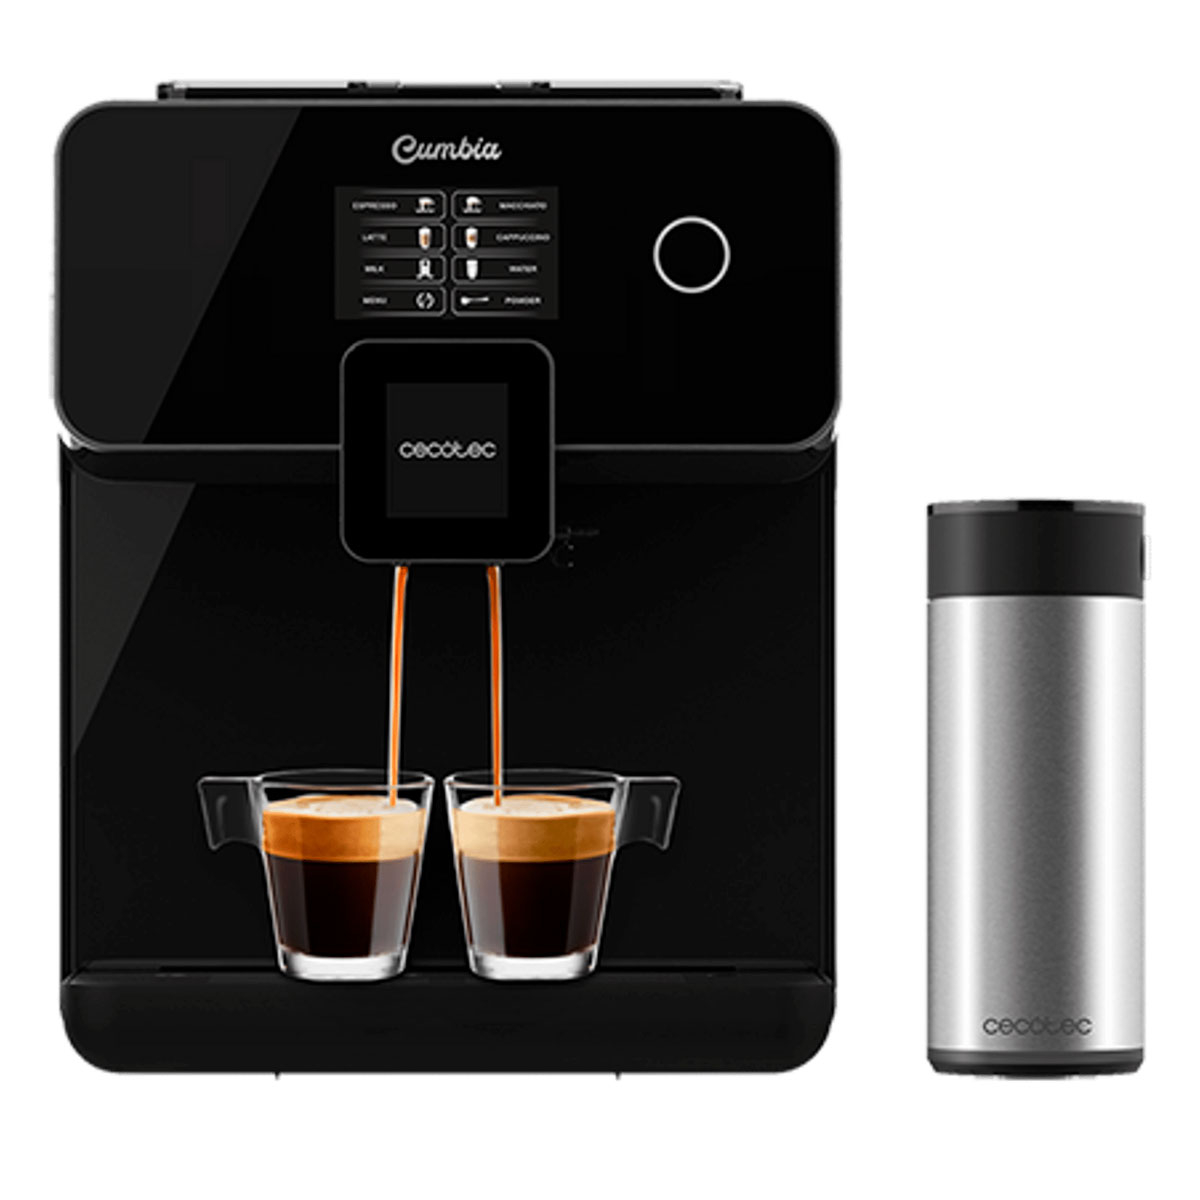 DeLonghi Magnifica Evo Máquina de Café Automática com Moinho 15 Bar  Titânio/Preto